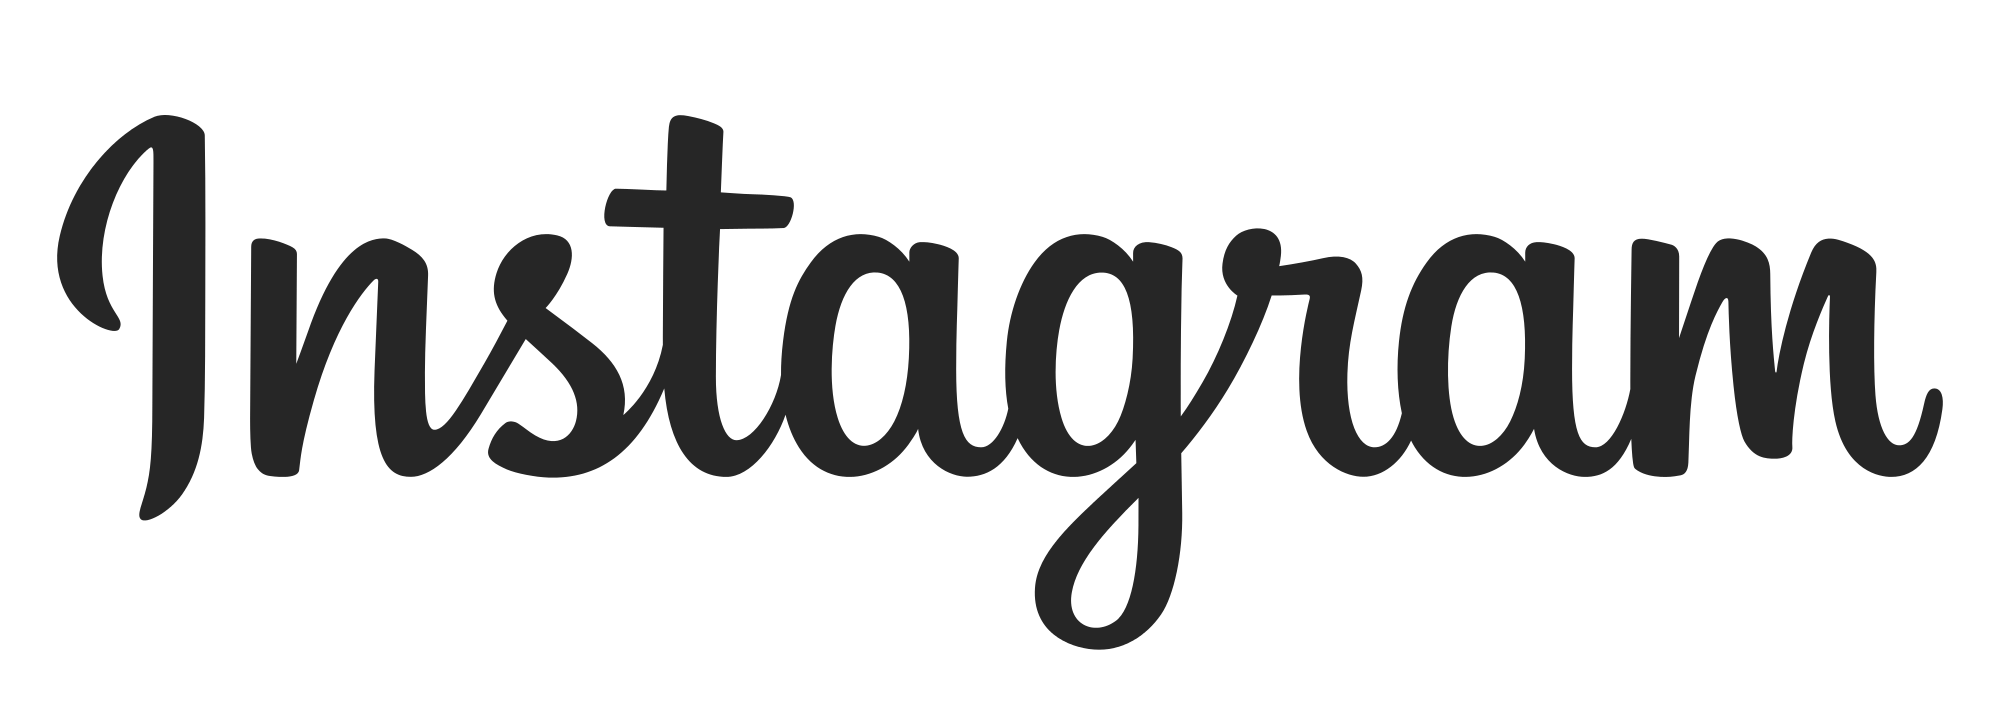 Instagram IG Logotipo PNG Imagem Transparente